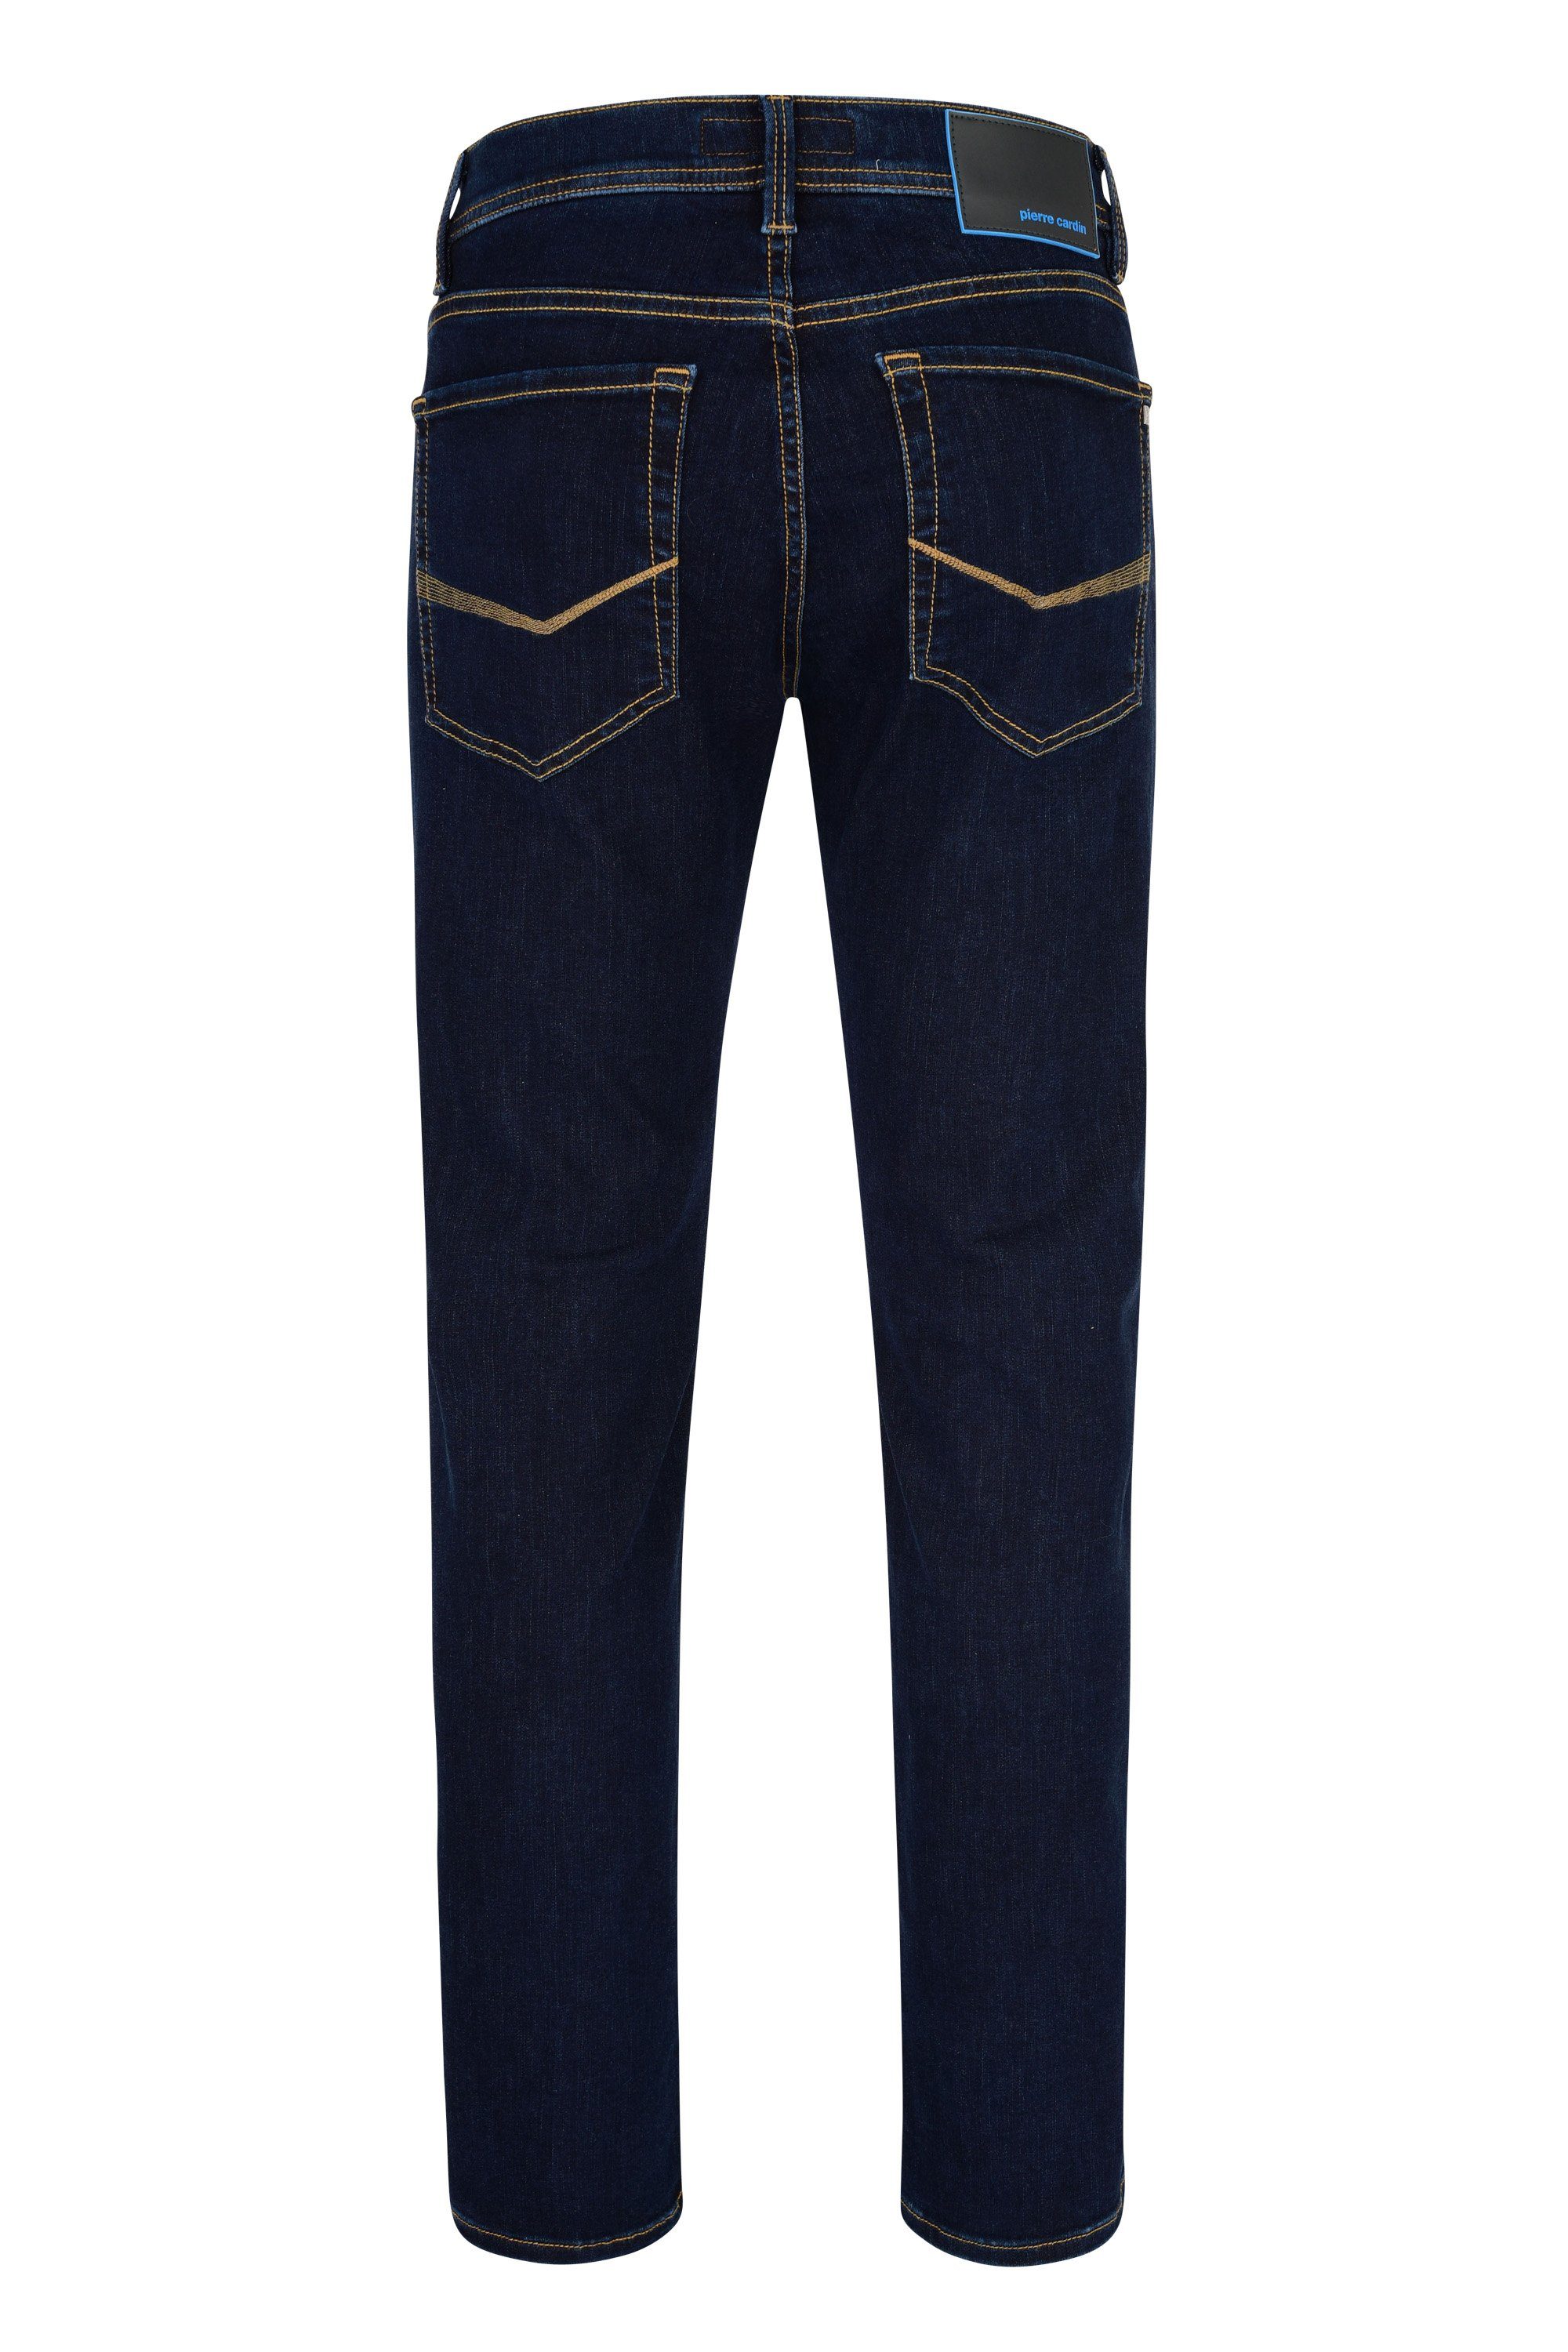 Herren Jeans Pierre Cardin 5-Pocket-Jeans PIERRE CARDIN FUTUREFLEX LYON dark blue 3451 8880.